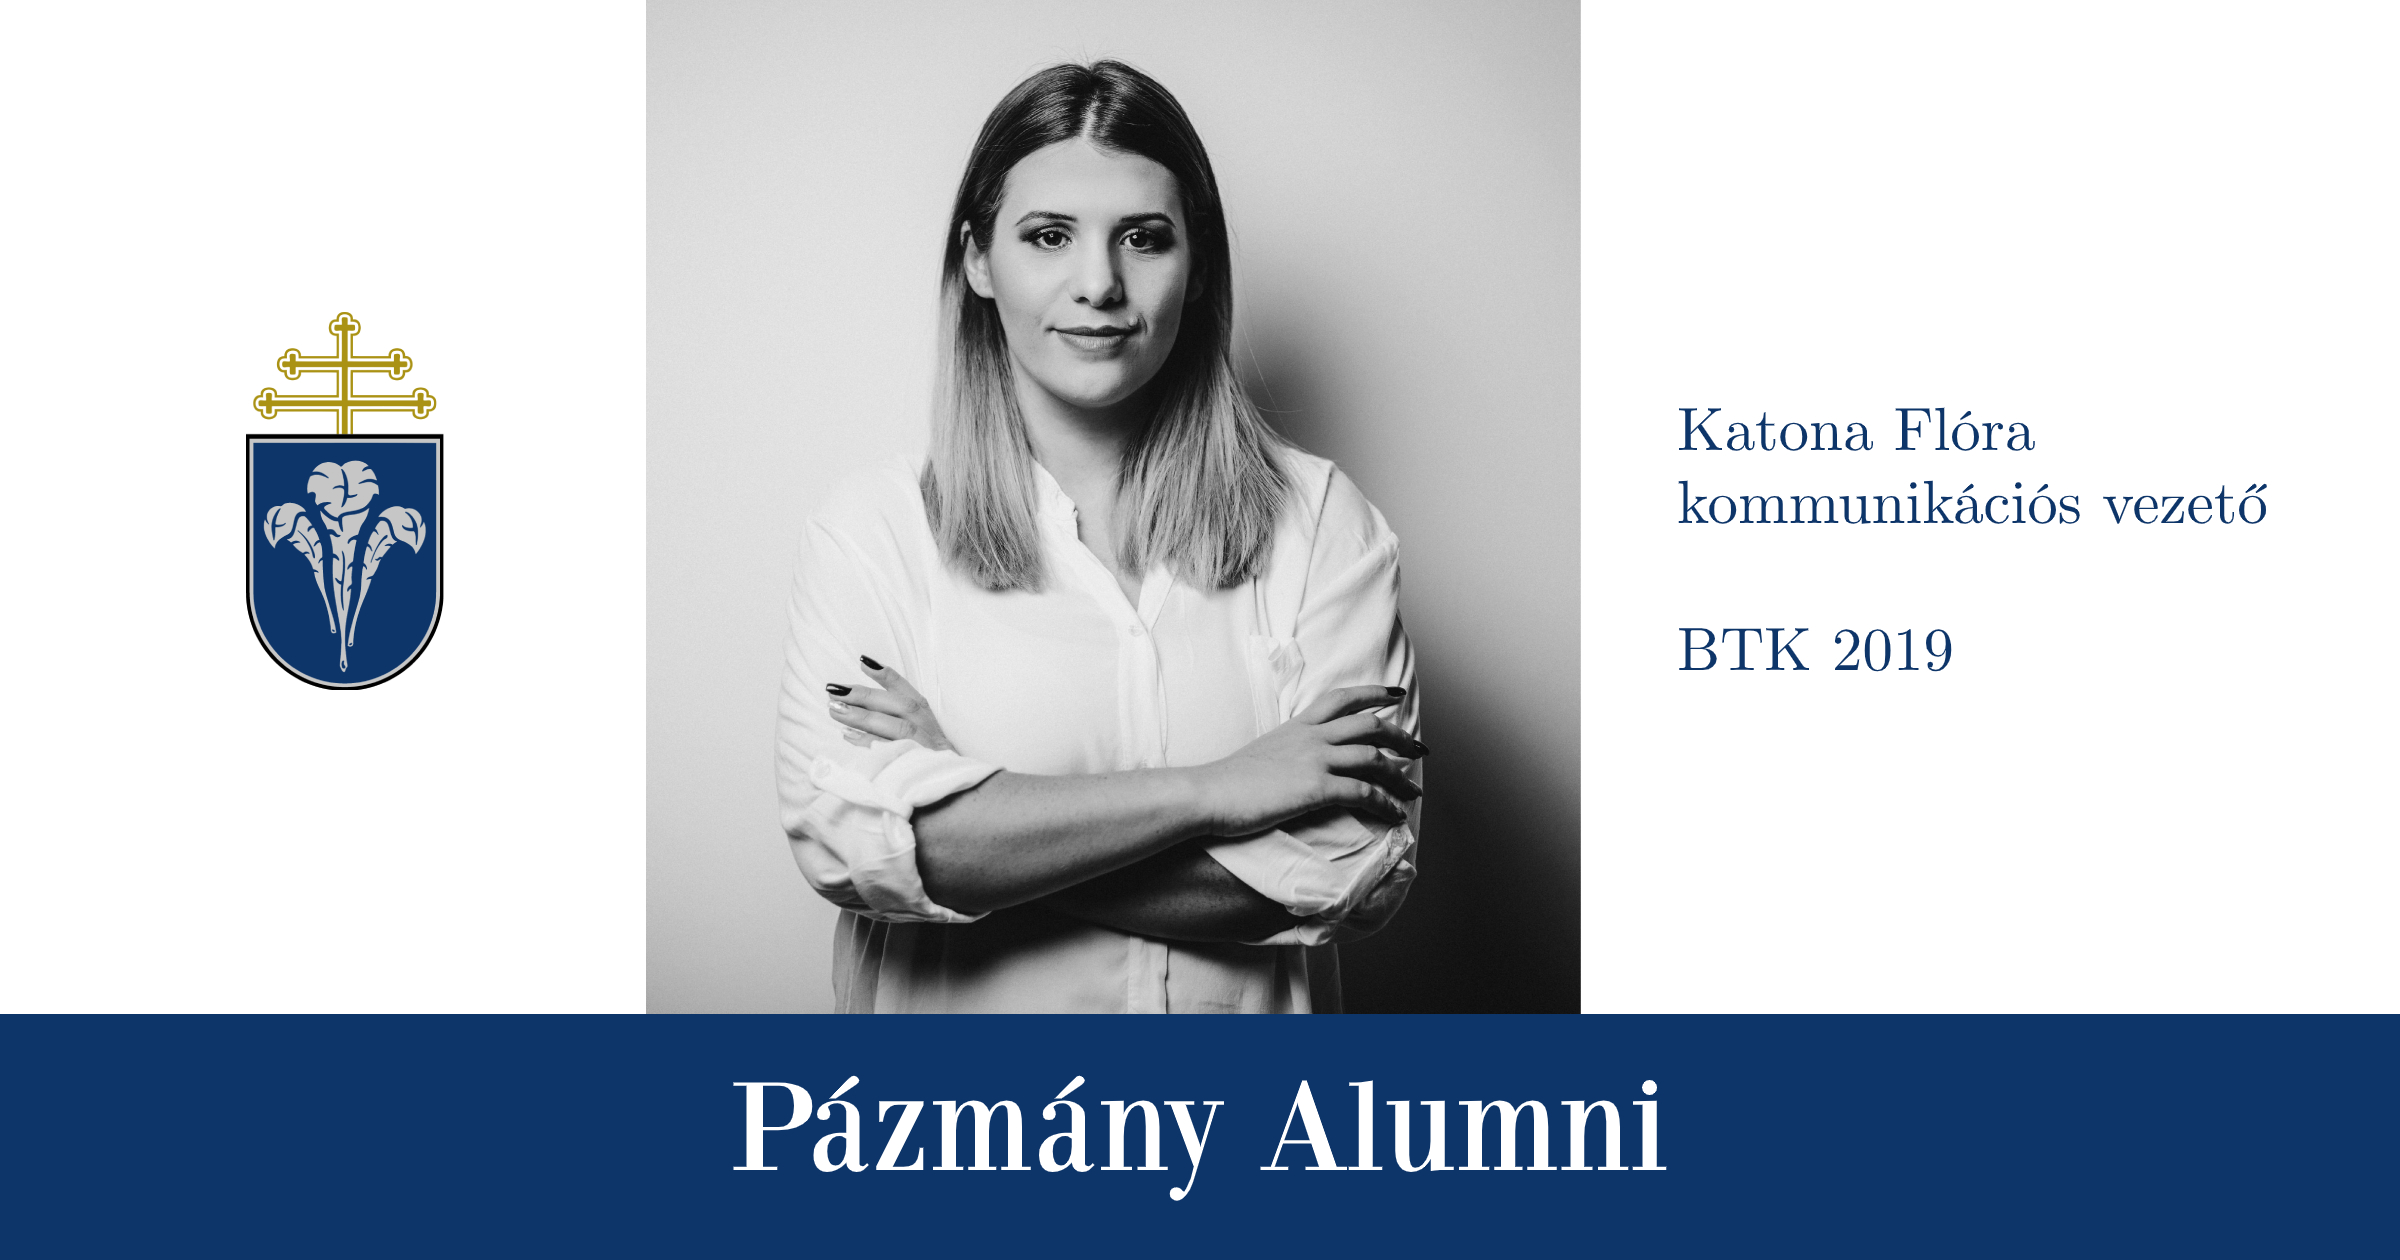 Pázmány Alumni: interjú Katona Flórával, a BTK egykori hallgatójával